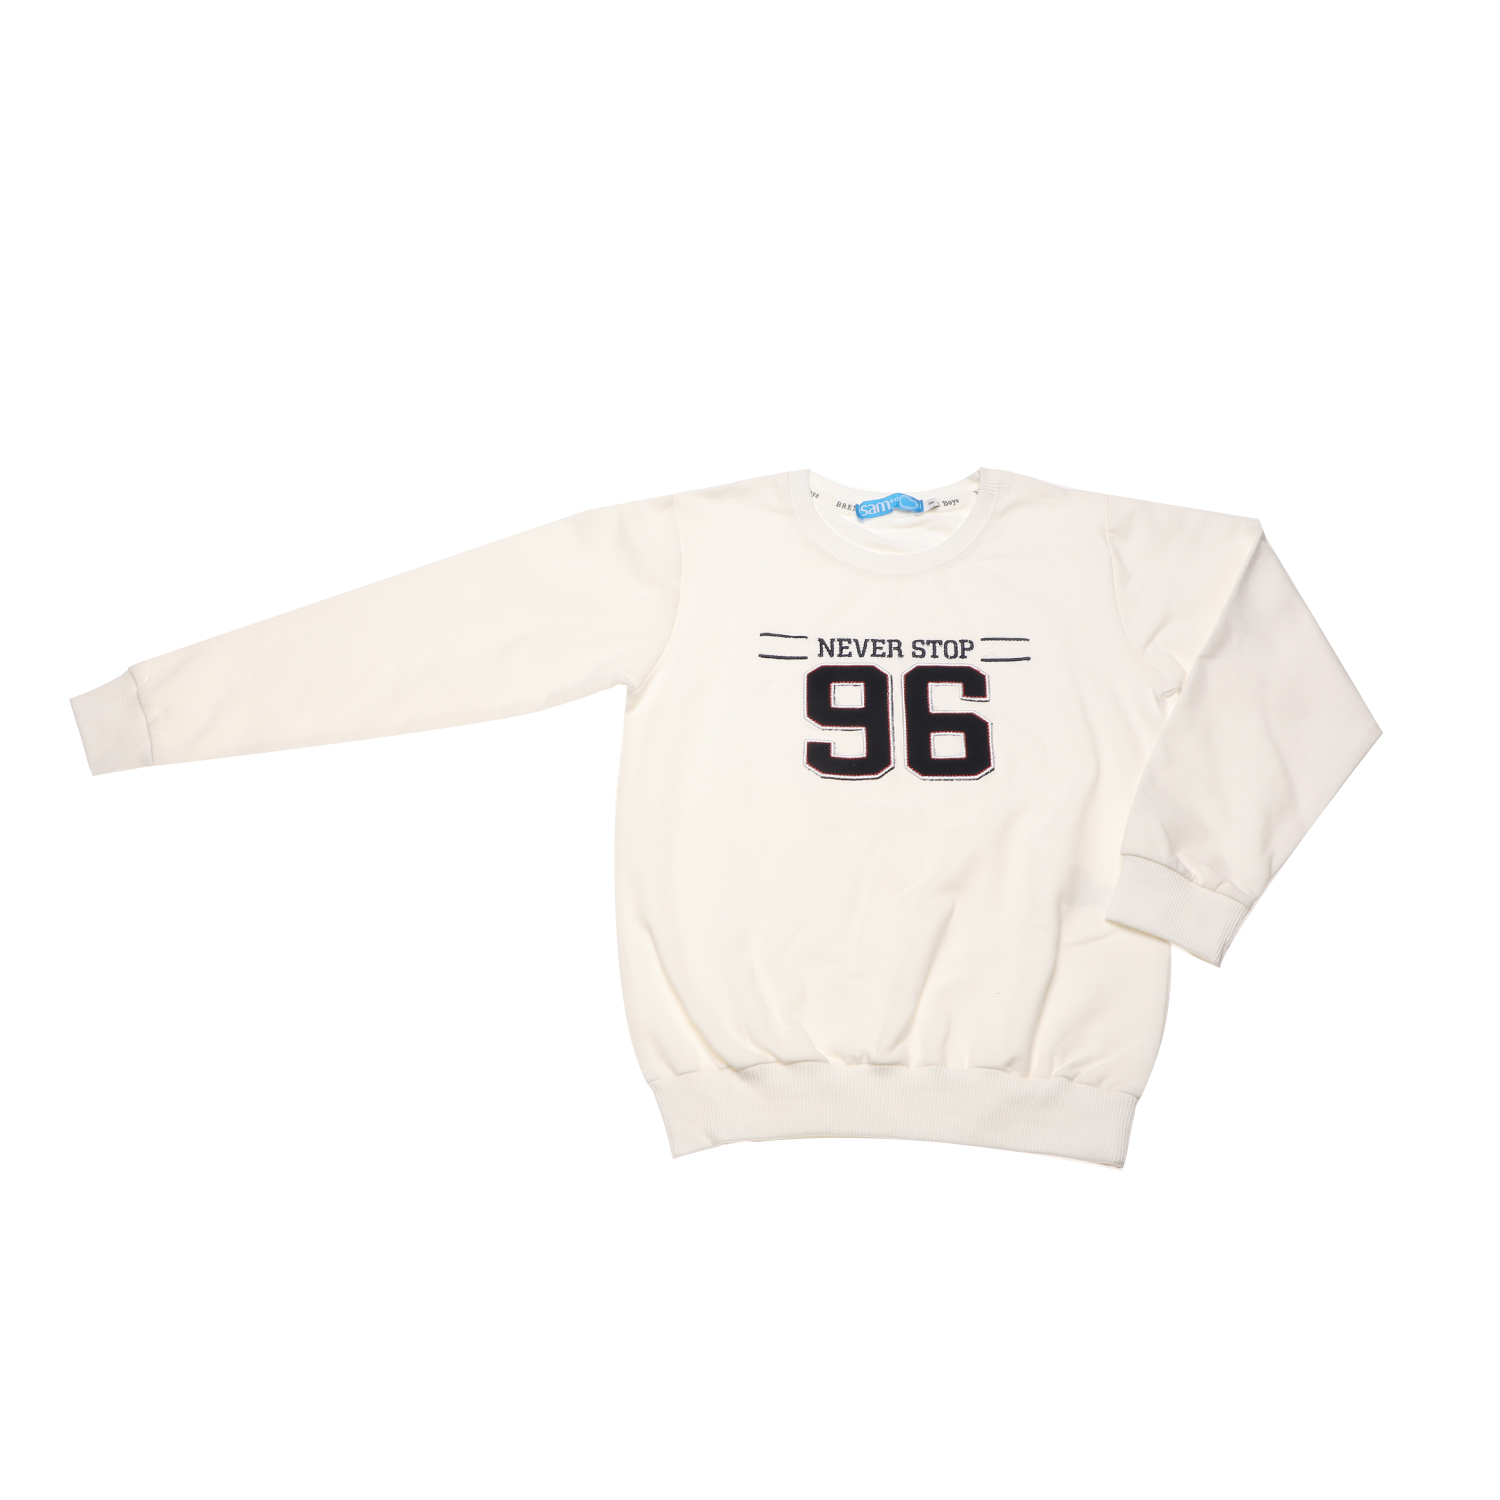 Παιδικά/Boys/Ρούχα/Μπλούζες Μακρυμάνικες SAM 0-13 - Παιδική φούτερ μπλούζα SAM 0-13 NEVER STOP 96 εκρού